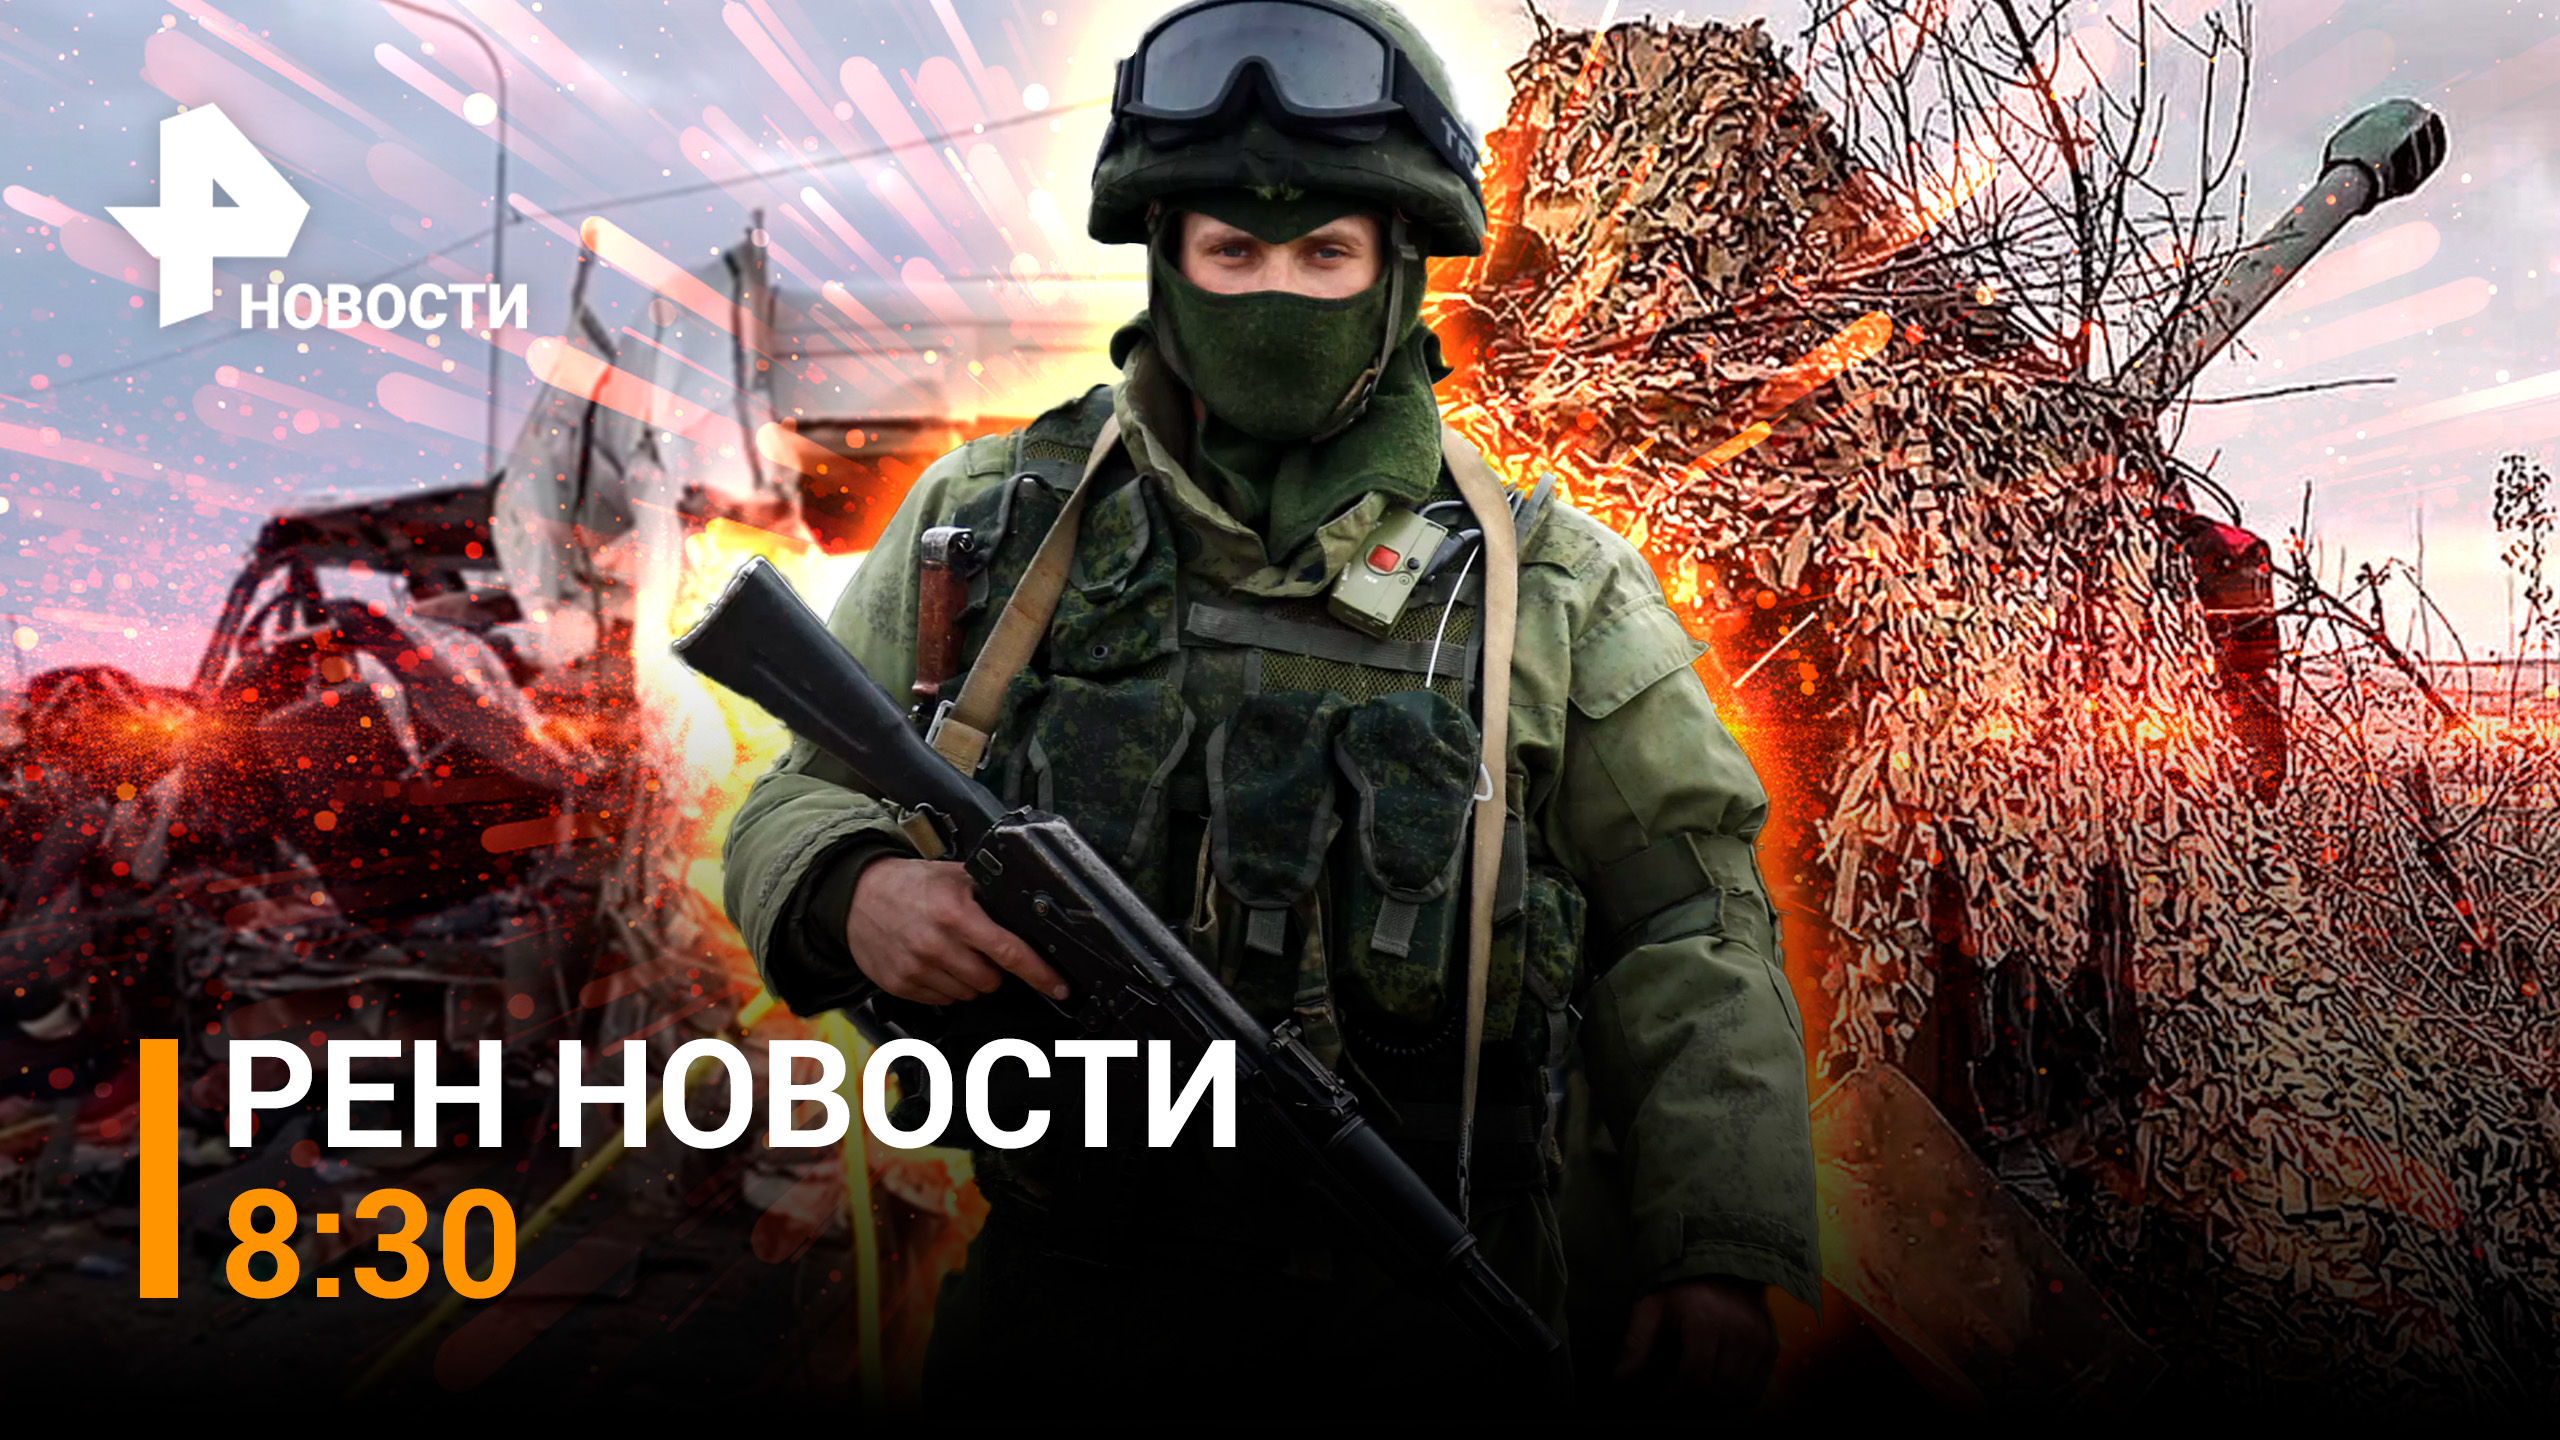 Наши бойцы отбрасывают ВСУ на километры. Байдена винят в тратах на Киев / РЕН Новости 8:30 06.12